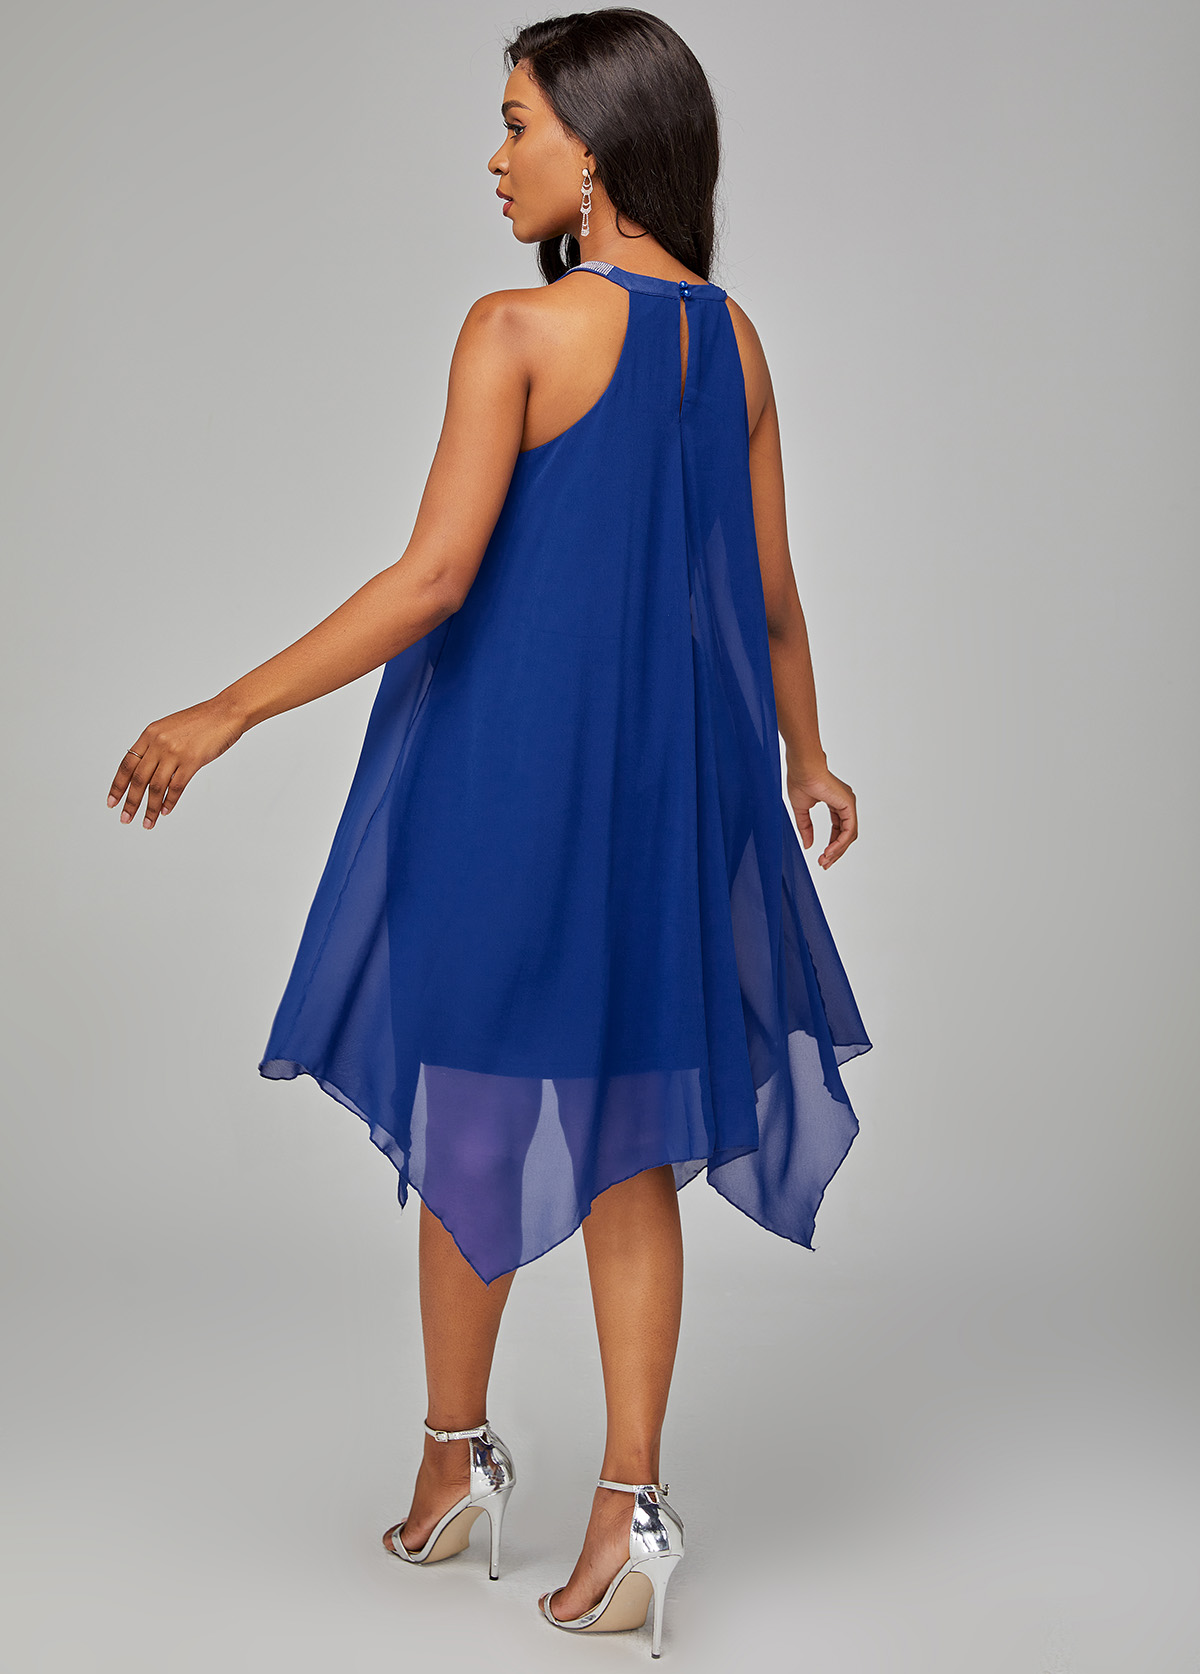 Blue Chiffon Overlay Embellished Neck Dress